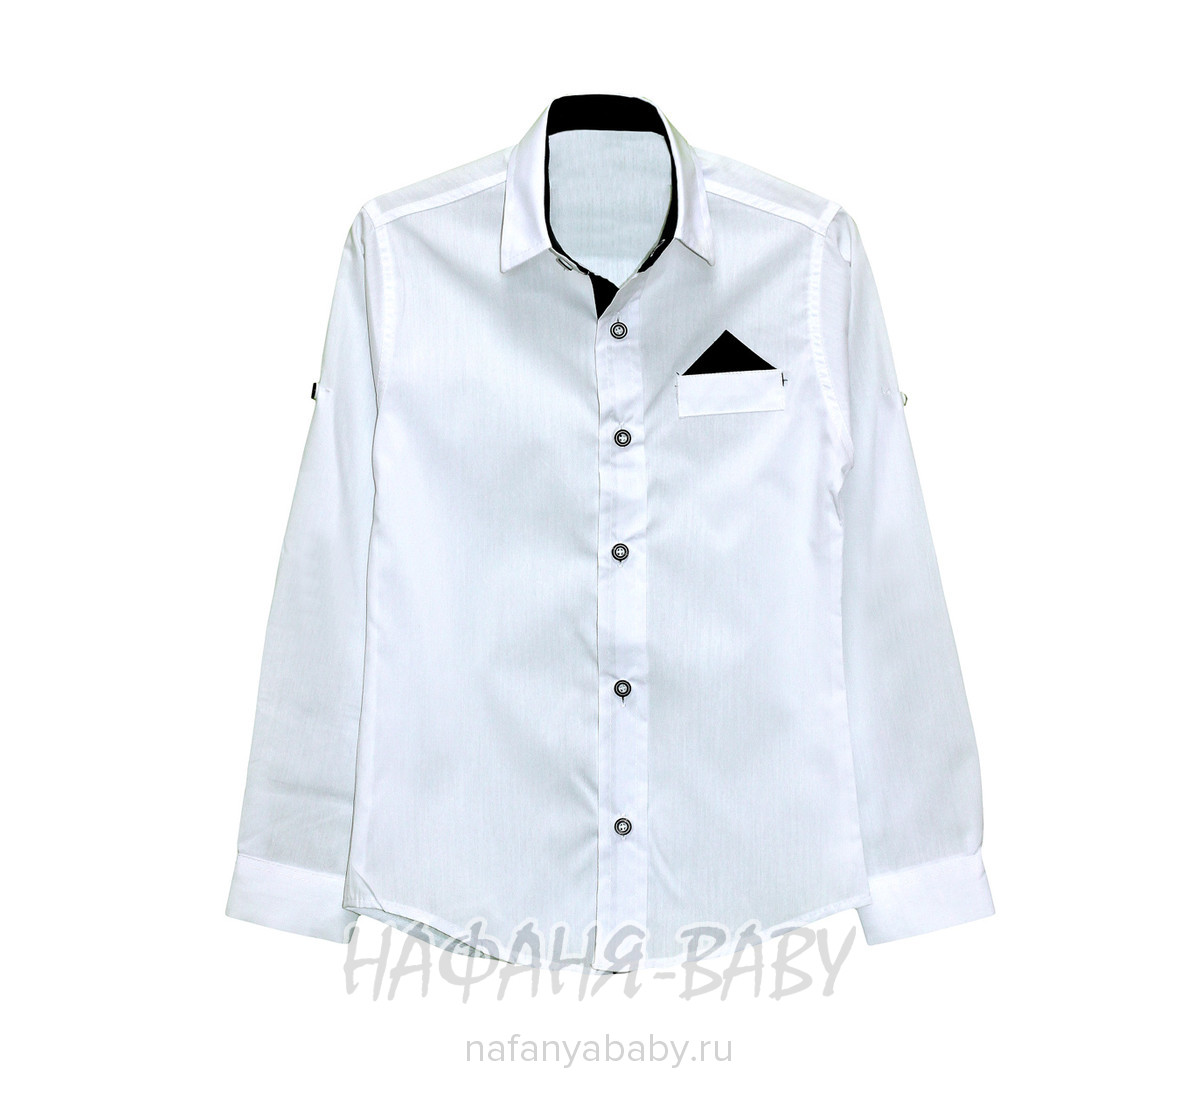 Белая рубашка для мальчика FABEY, купить в интернет магазине Нафаня. арт: 579 6-9.